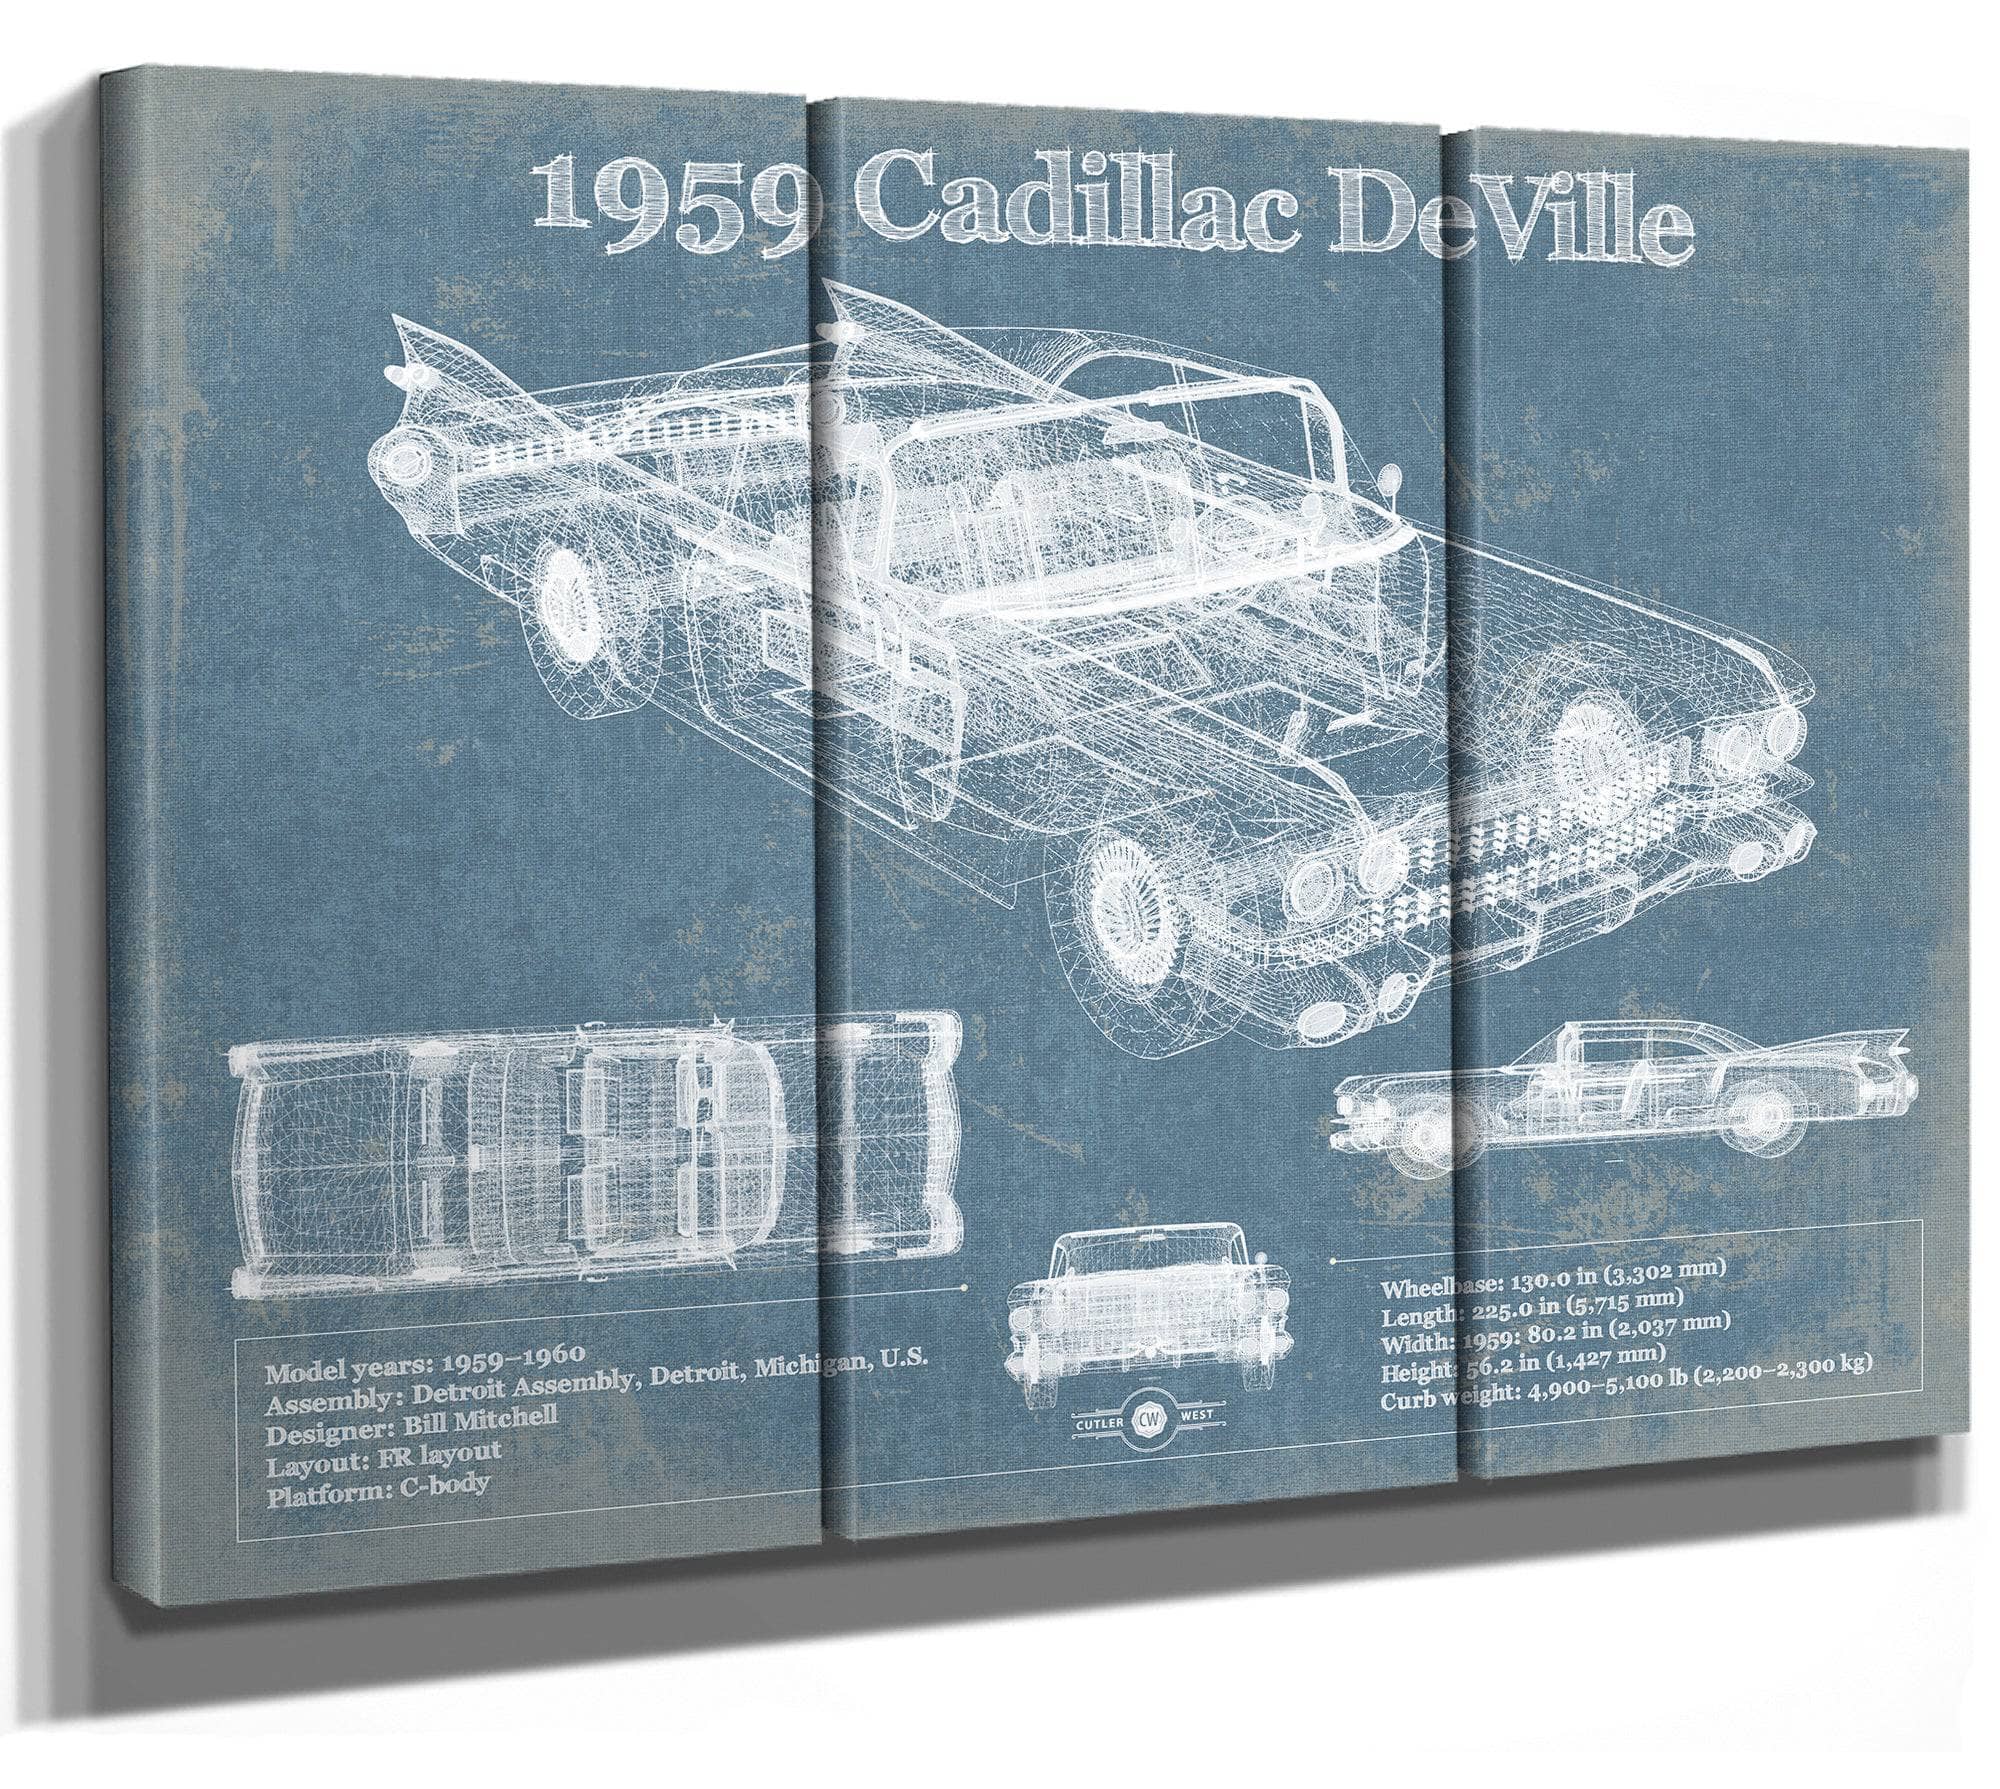 1959 Cadillac Coupe de Ville Blueprint Vintage Auto Print